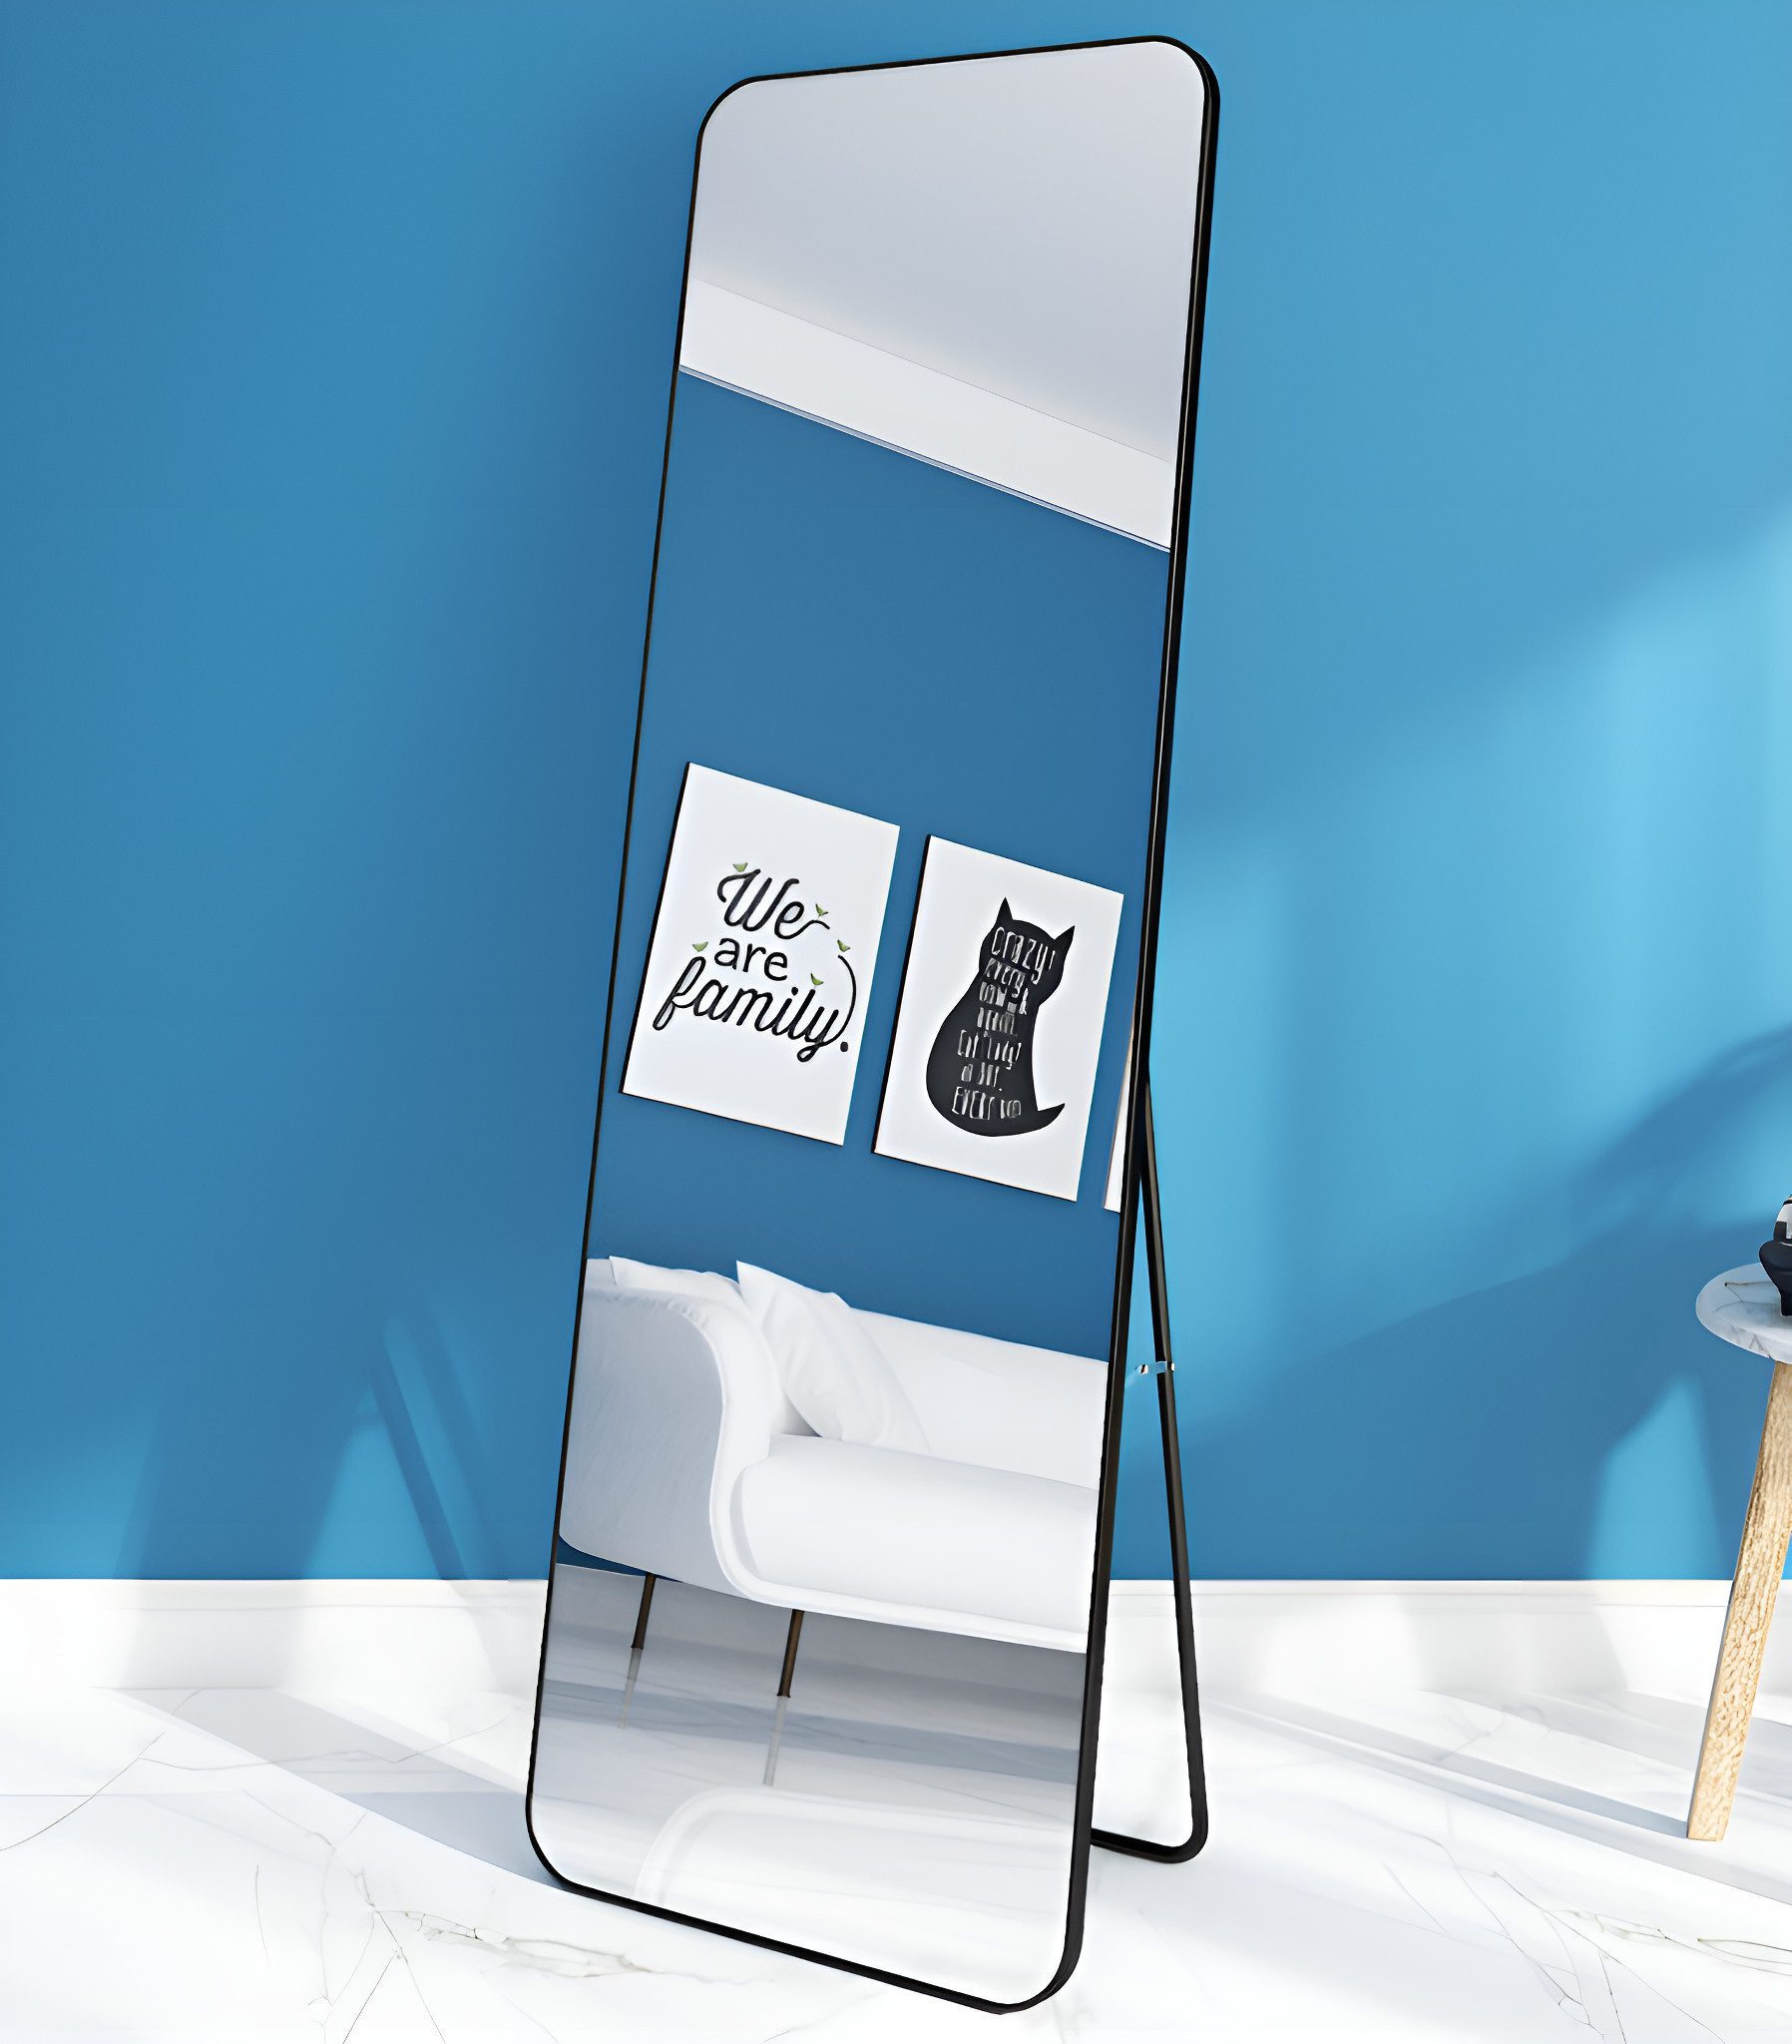 HIYORI Standspiegel Wandspiegel Ganzkörperspiegel 45*155cm - Wand- und Standspiege, für Schlafzimmer Spiegel Stehend Mirrors